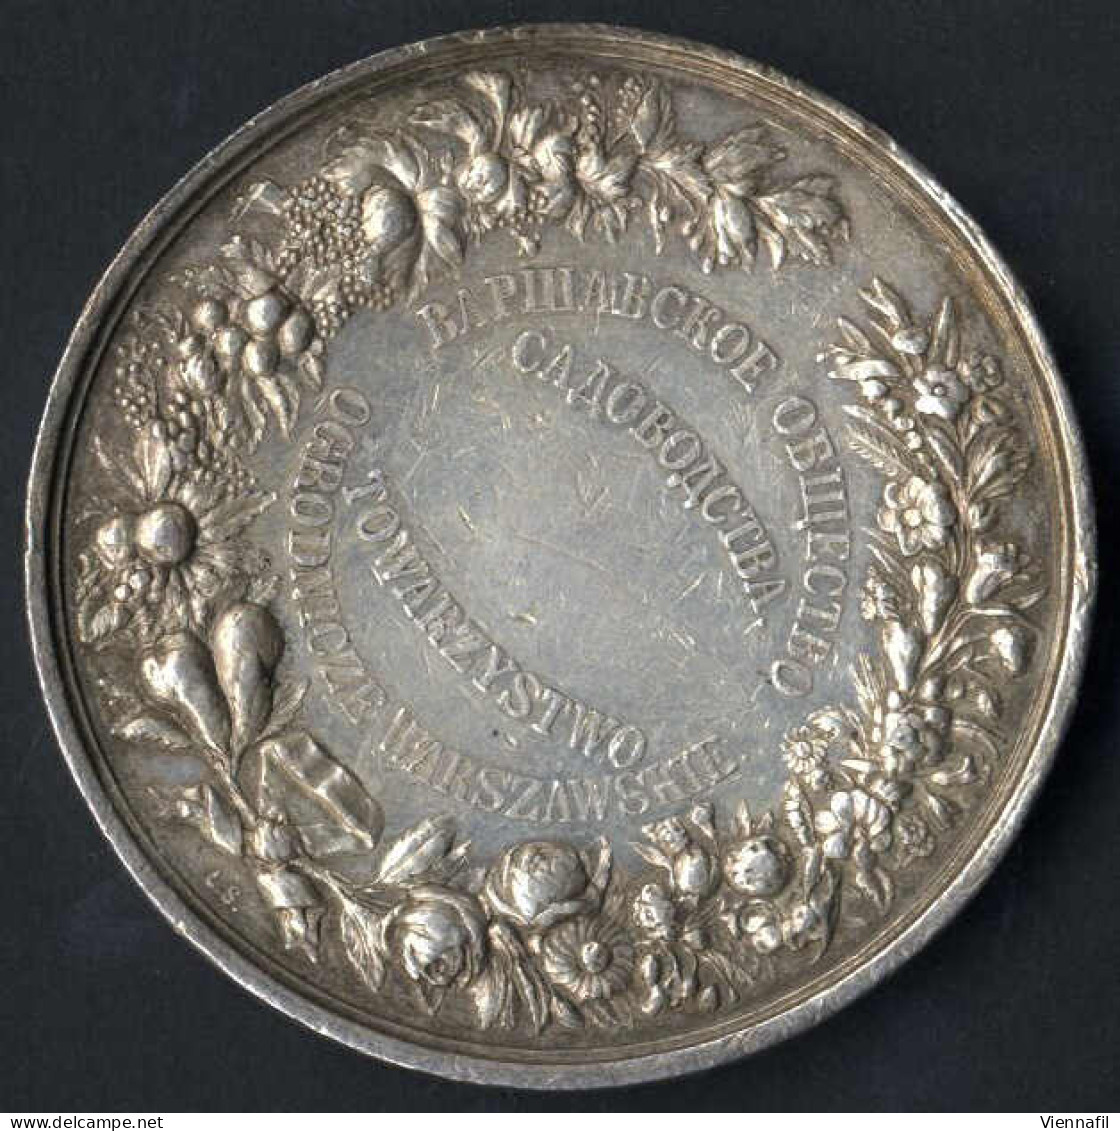 Medaille Der Warschauer Gartenbaugenossenschaft, Gartenbauausstellung Warschau 1895, Silbermedaille Von L. Steinman, Gep - Polonia